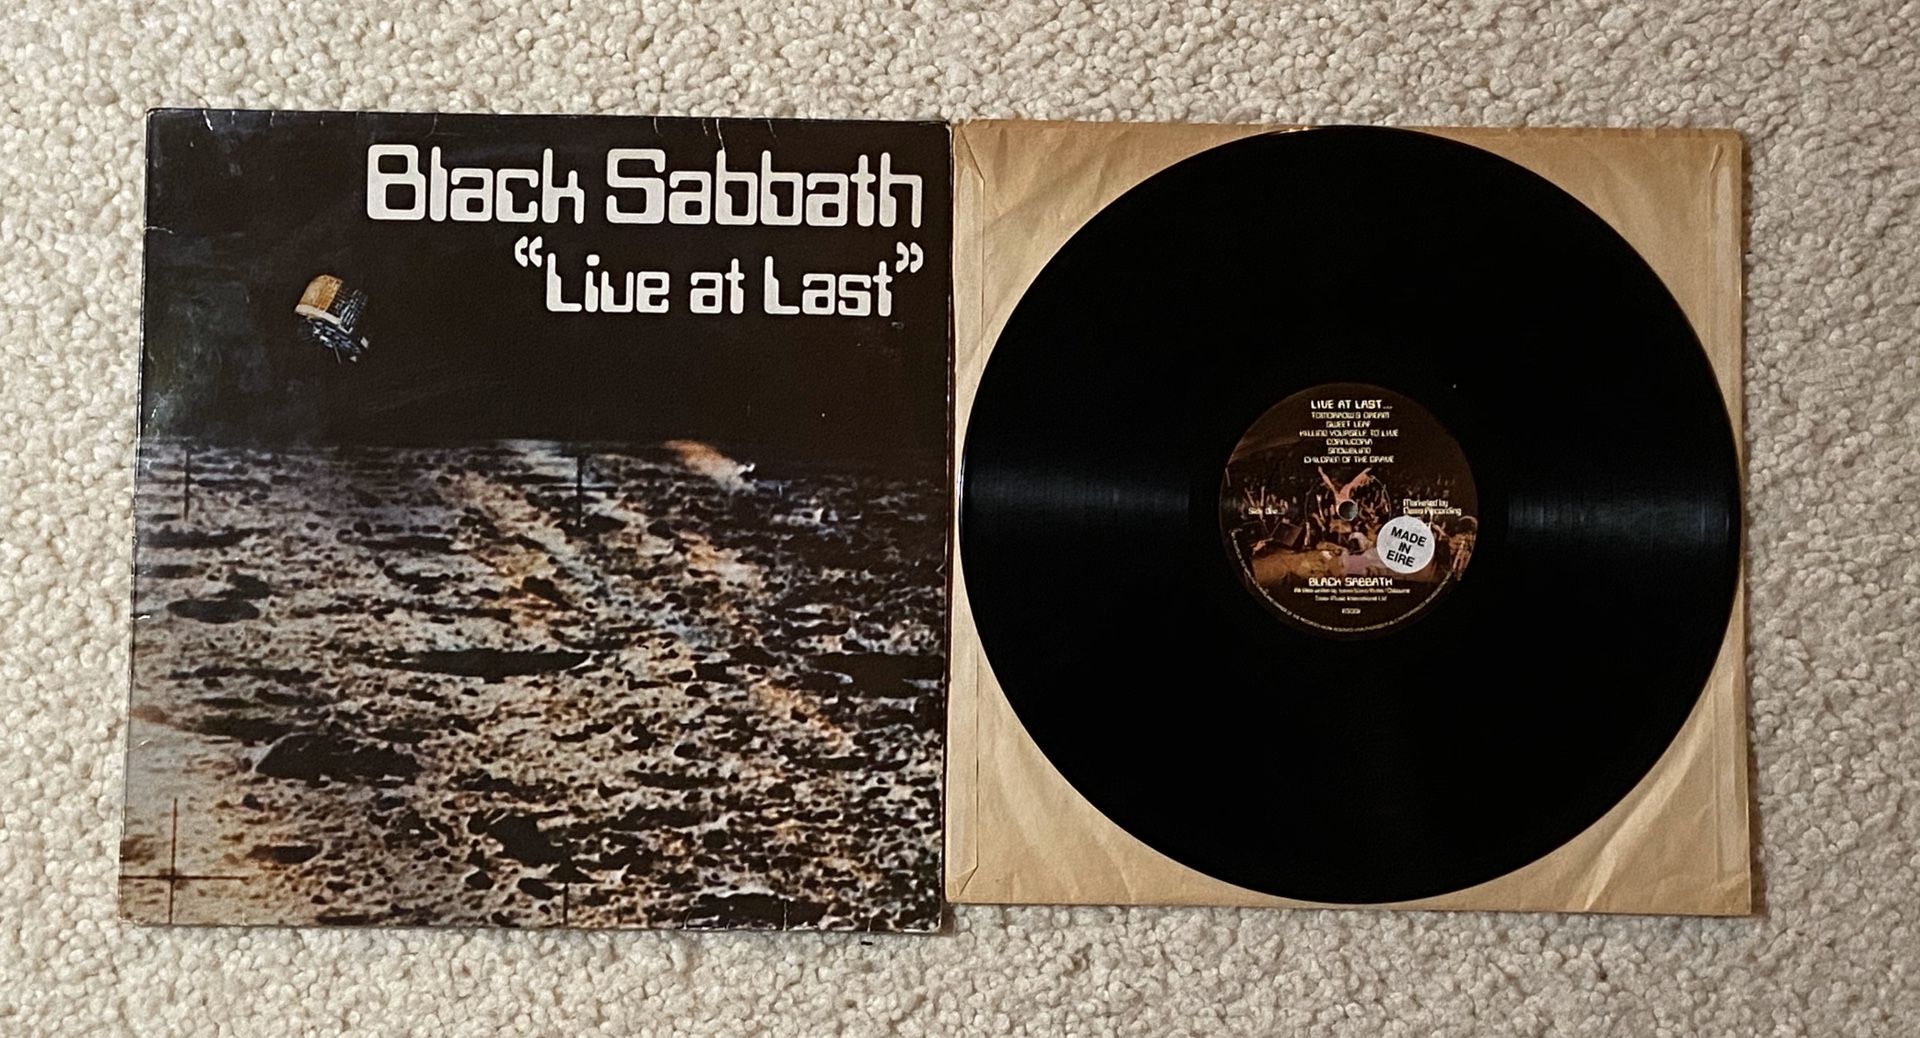 Black Sabbath “Live At Last” vinyl lp 1980 NEMS Records Ireland 🇮🇪 Pressing beautiful vinyl Metal